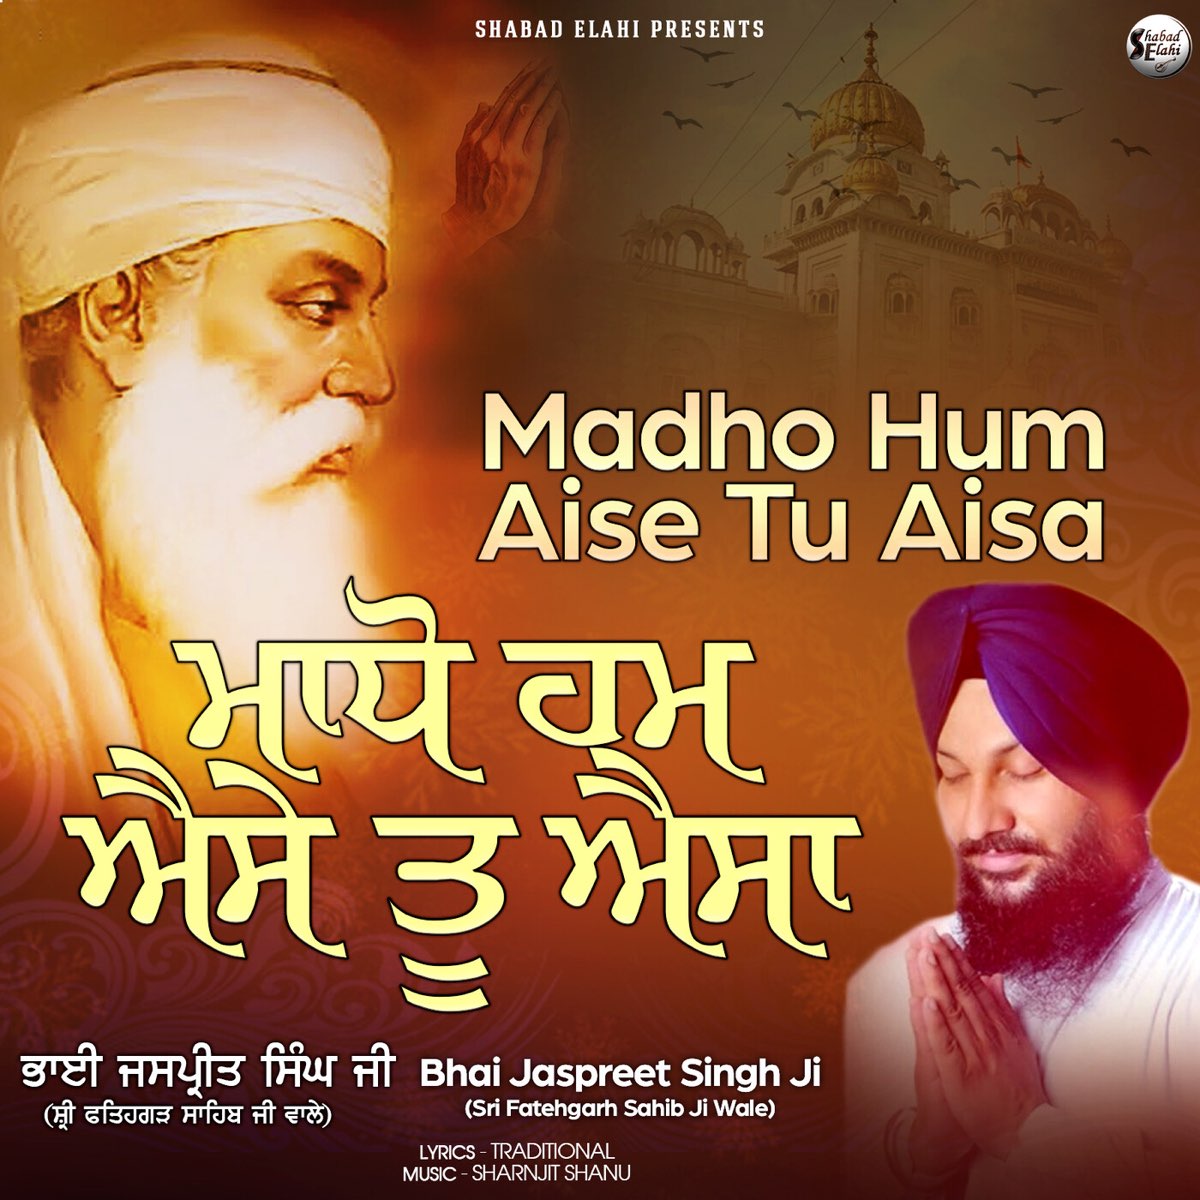 Madho Hum Aise Tu Aisa - Single - Album by Bhai Jaspreet Singh Ji (Shri  Fatehgarh Sahib ji Wale) - Apple Music